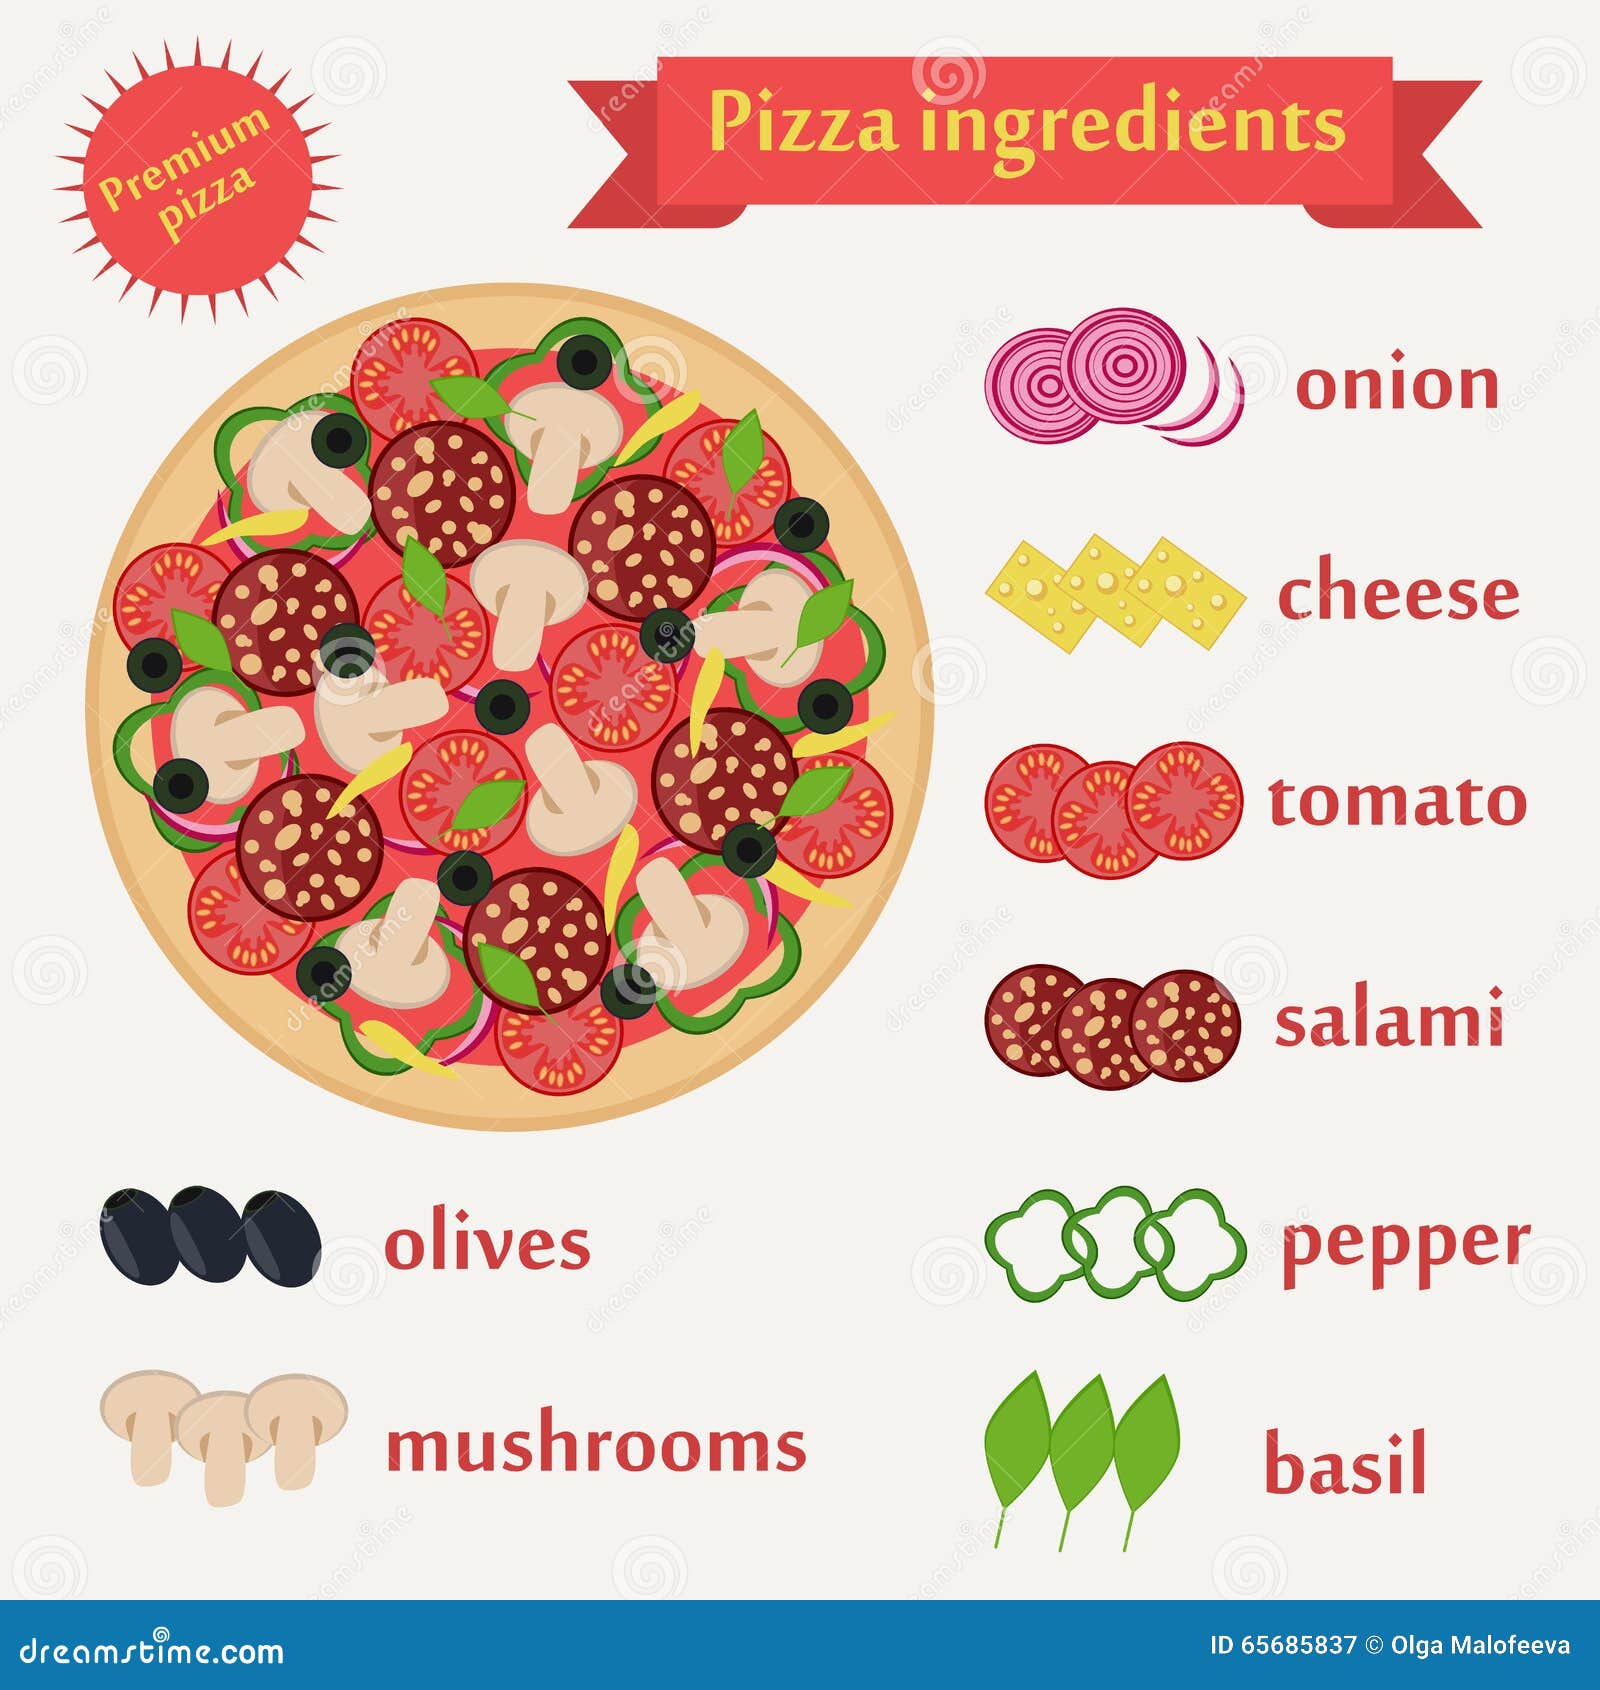 рецепт пиццы на английском языке 5 класс фото 1